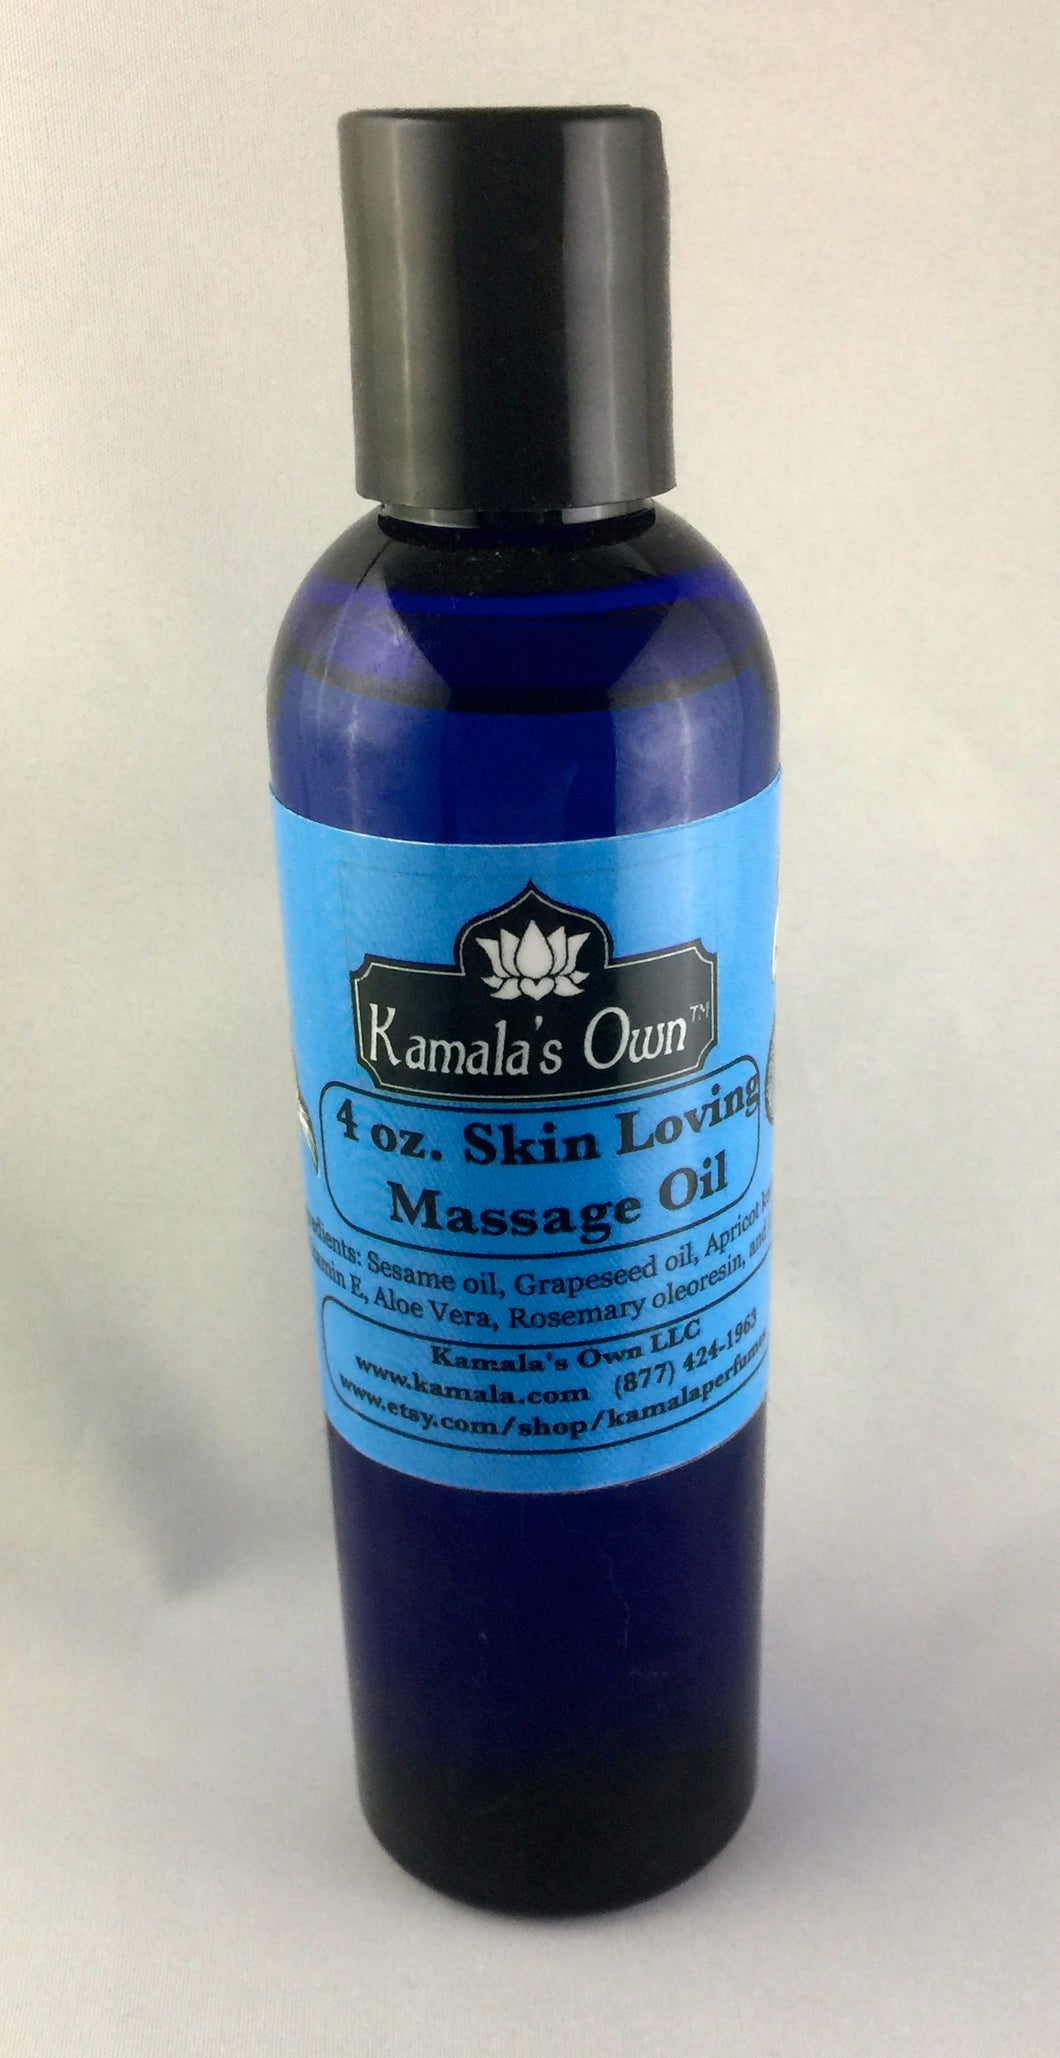 Skin Loving Massage oil